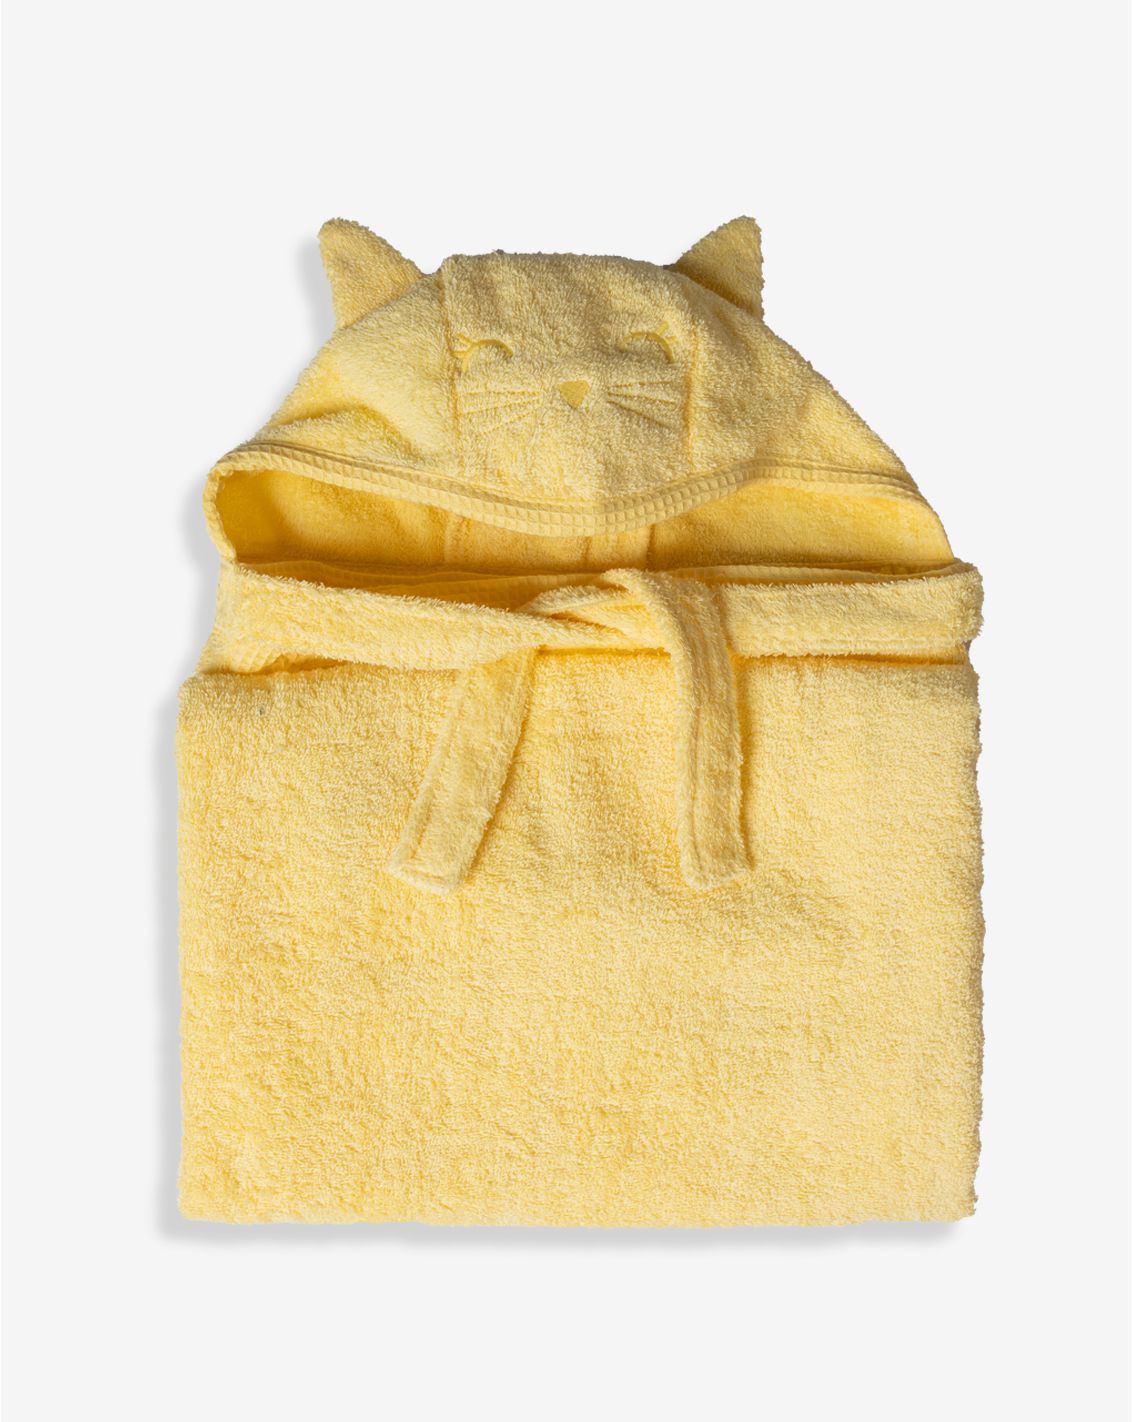 Fun Bath Time Gift Box - Yellow